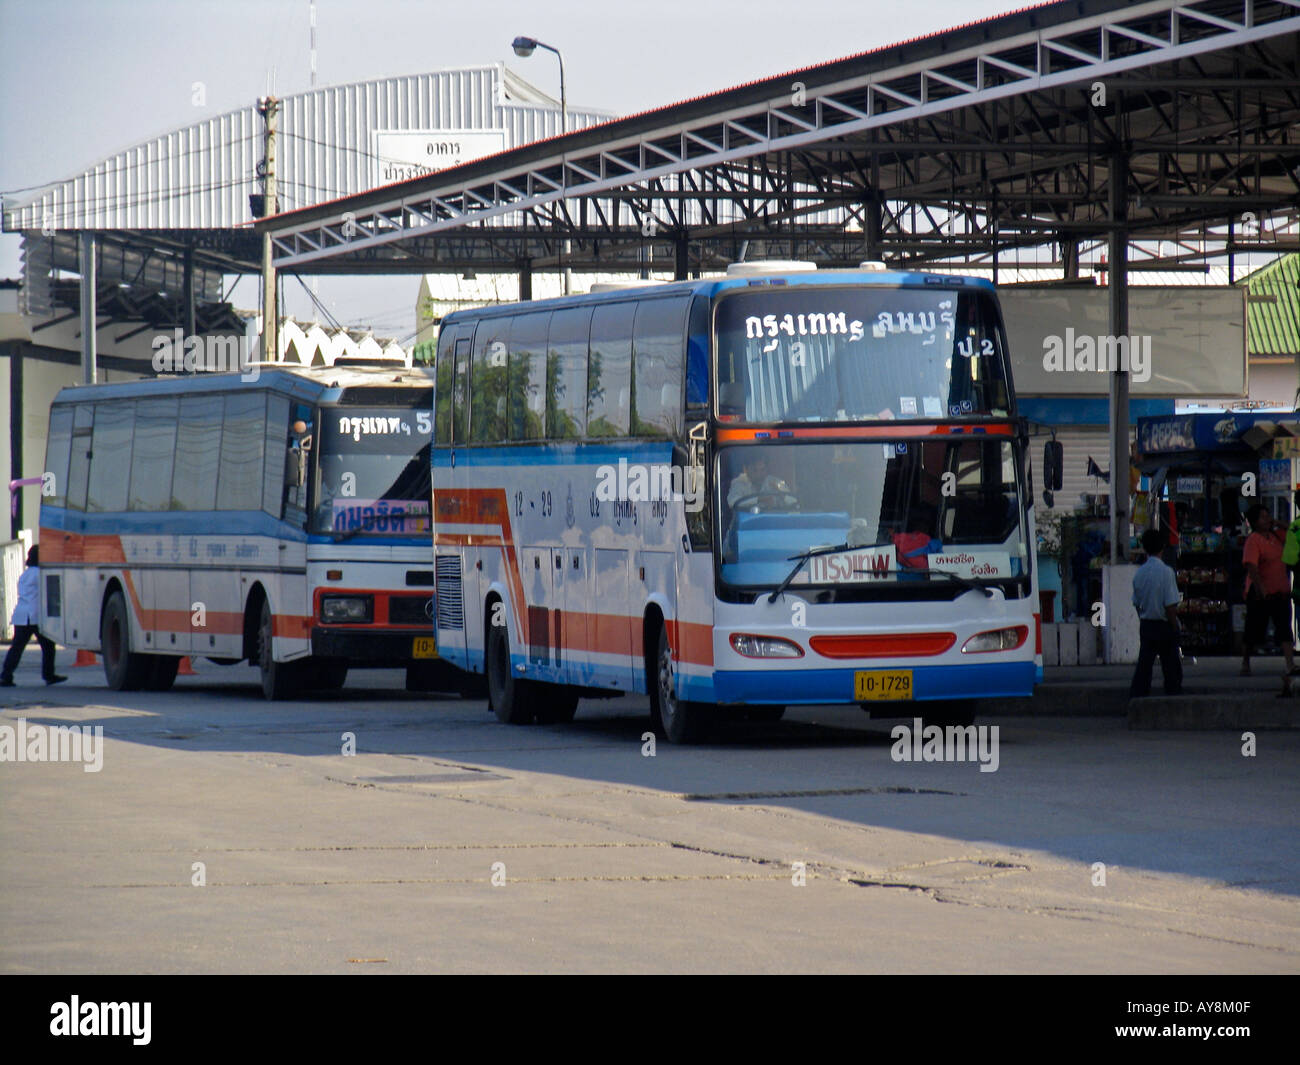 Northern bus station Bangkok Thailand Stock Photo